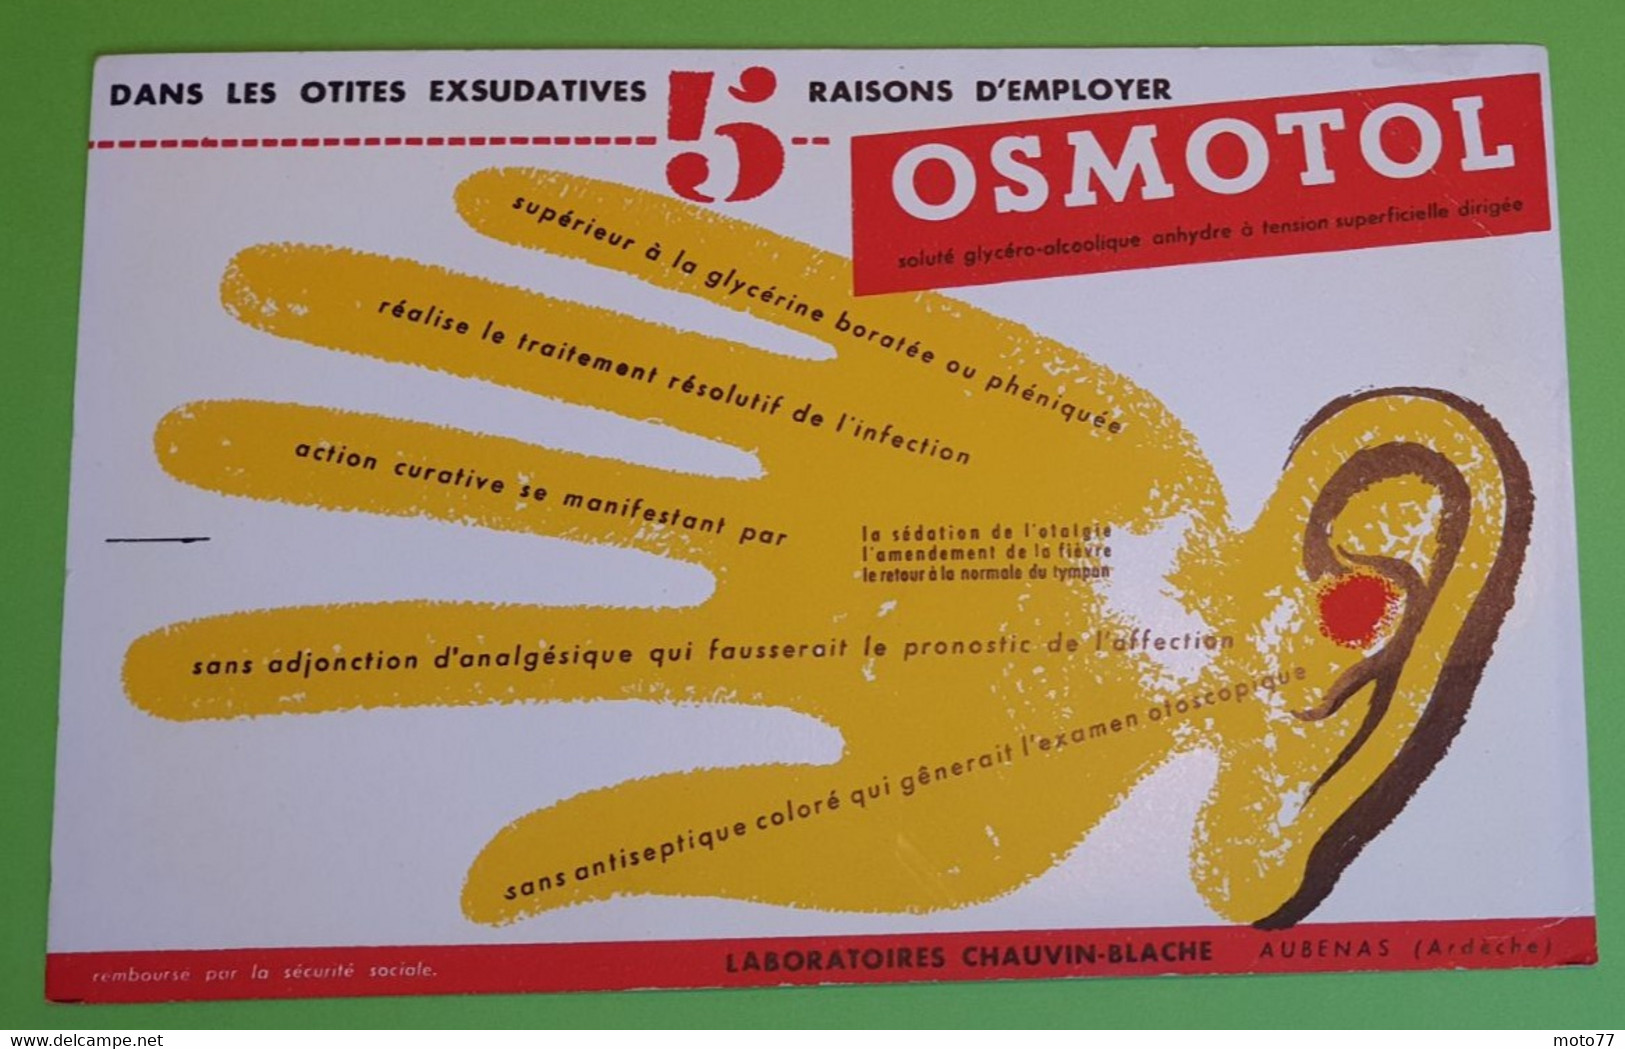 Buvard 303 - Laboratoires Chauvin - OSMOTOL - Oreille - Etat D'usage - Main - 21x13.5 Cm Environ - Année 1960 - Produits Pharmaceutiques